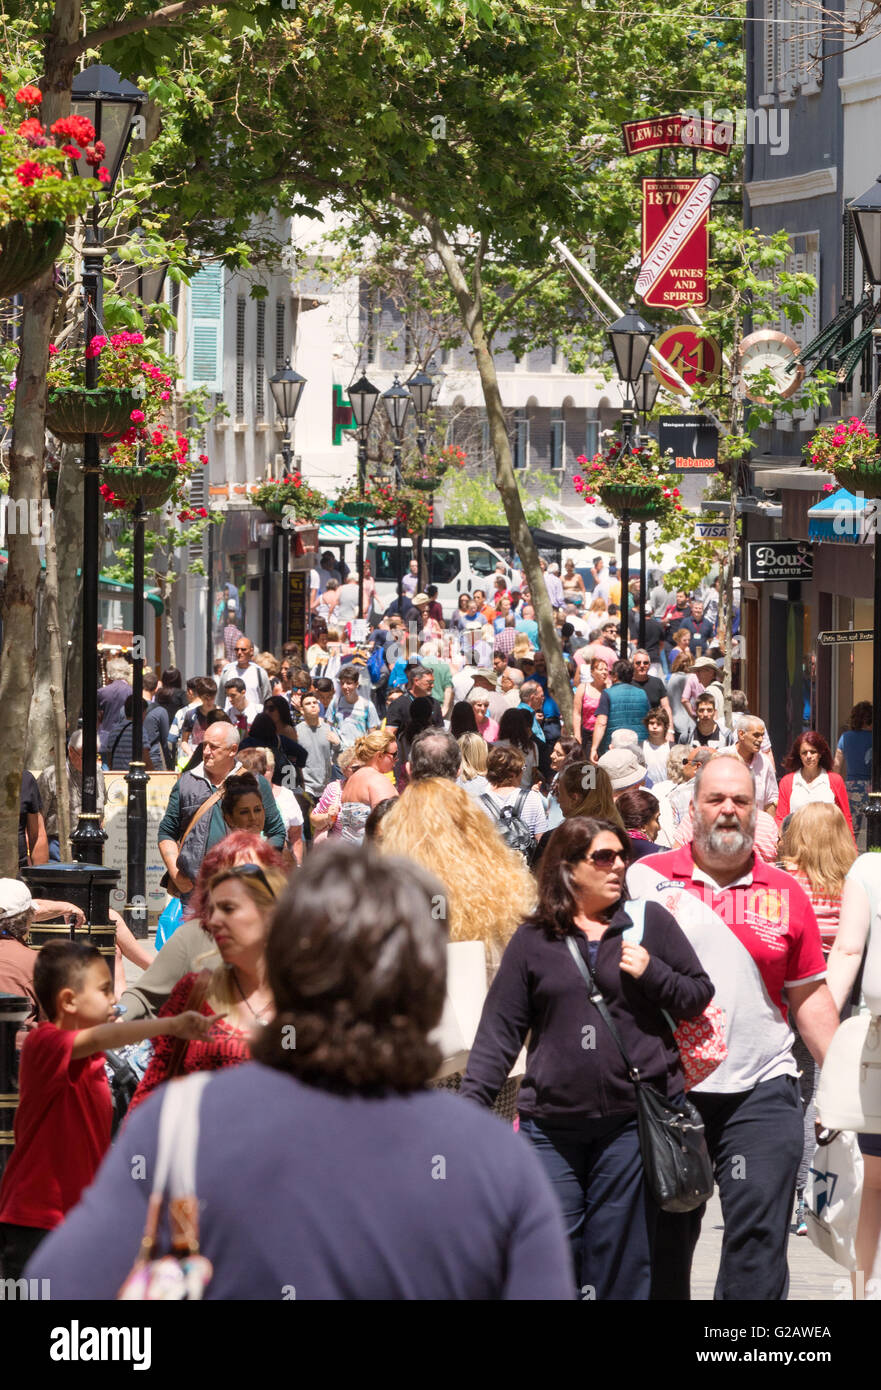 Des foules de gens locaux et touristes sur Main Street, Gibraltar, Europe Banque D'Images